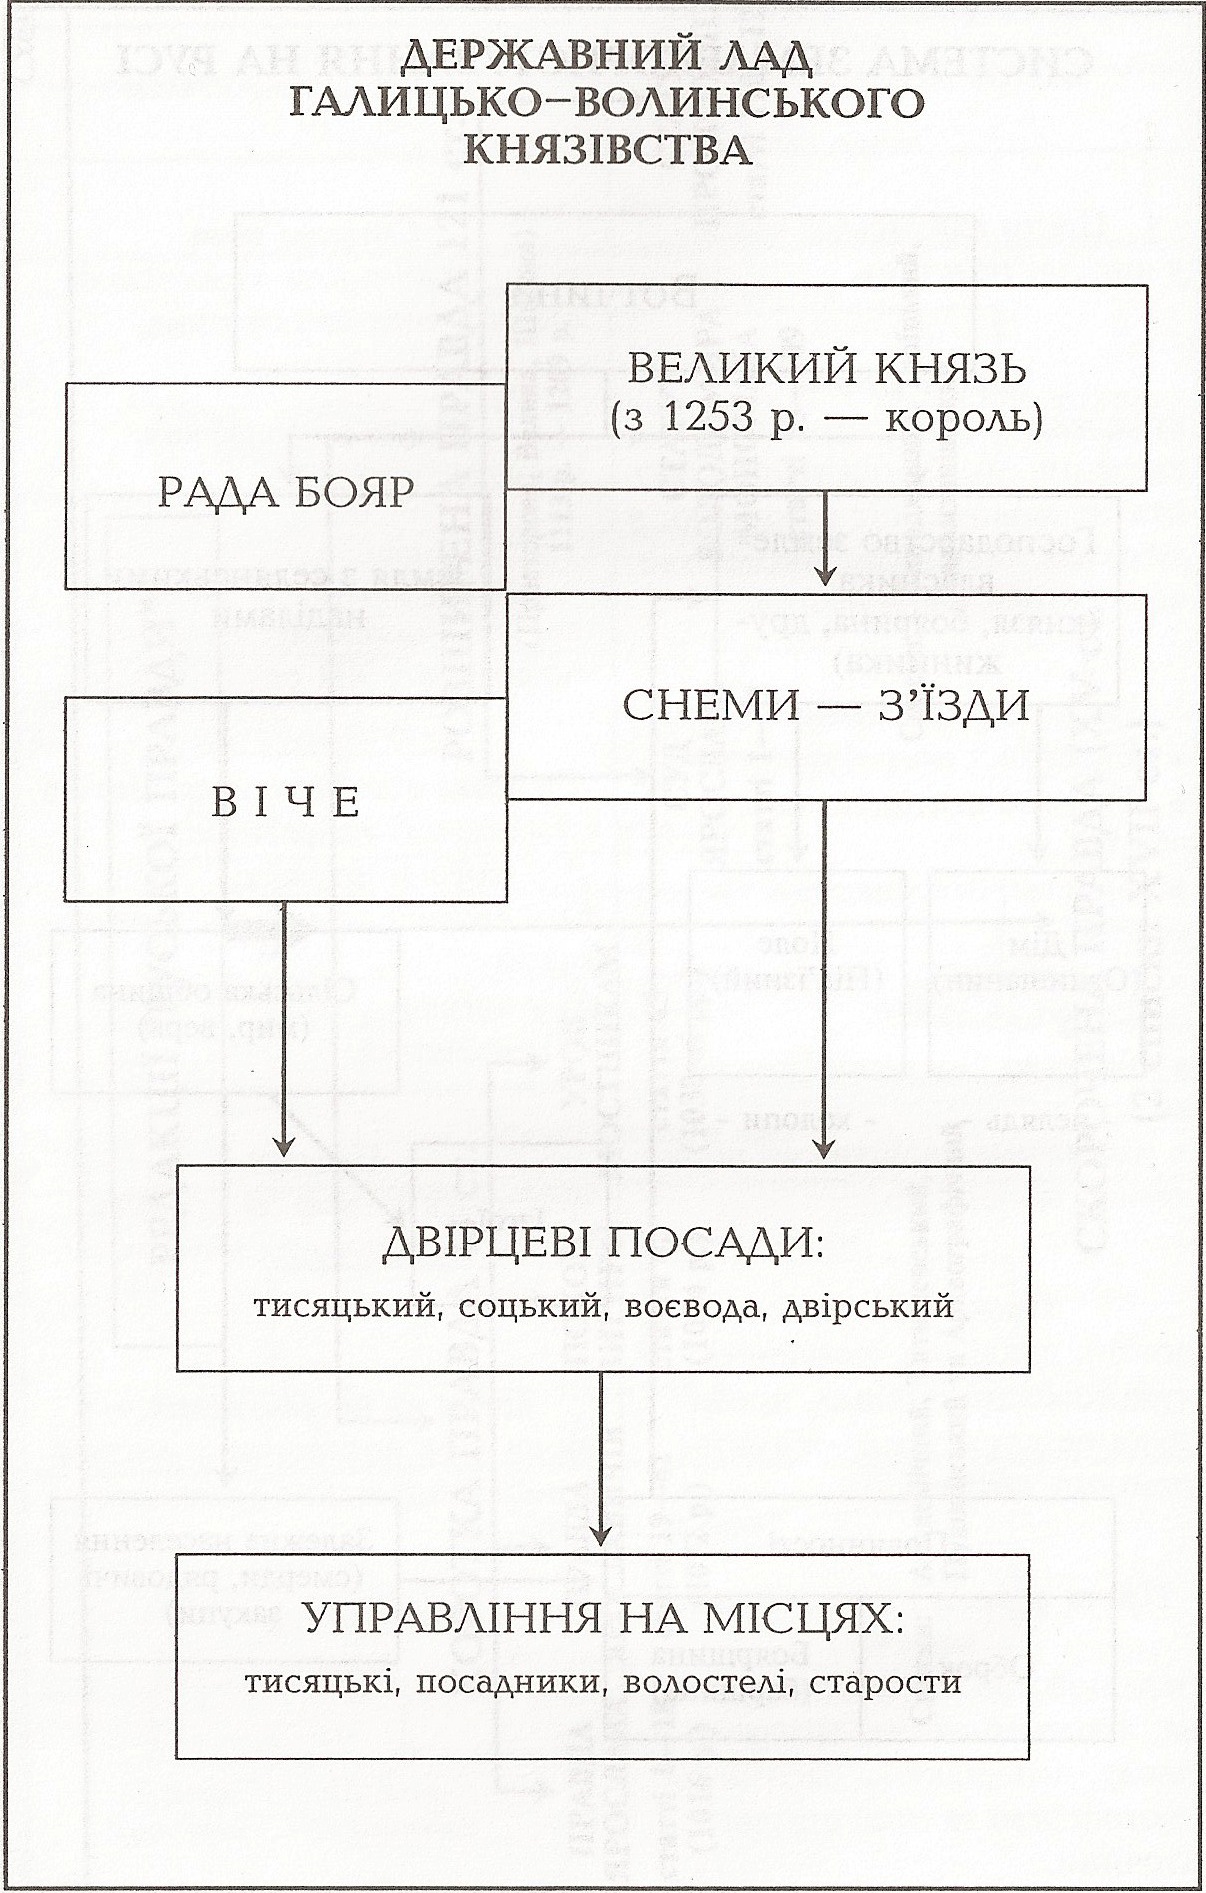 Таблица: Государственный строй Галицко-Волынского княжества